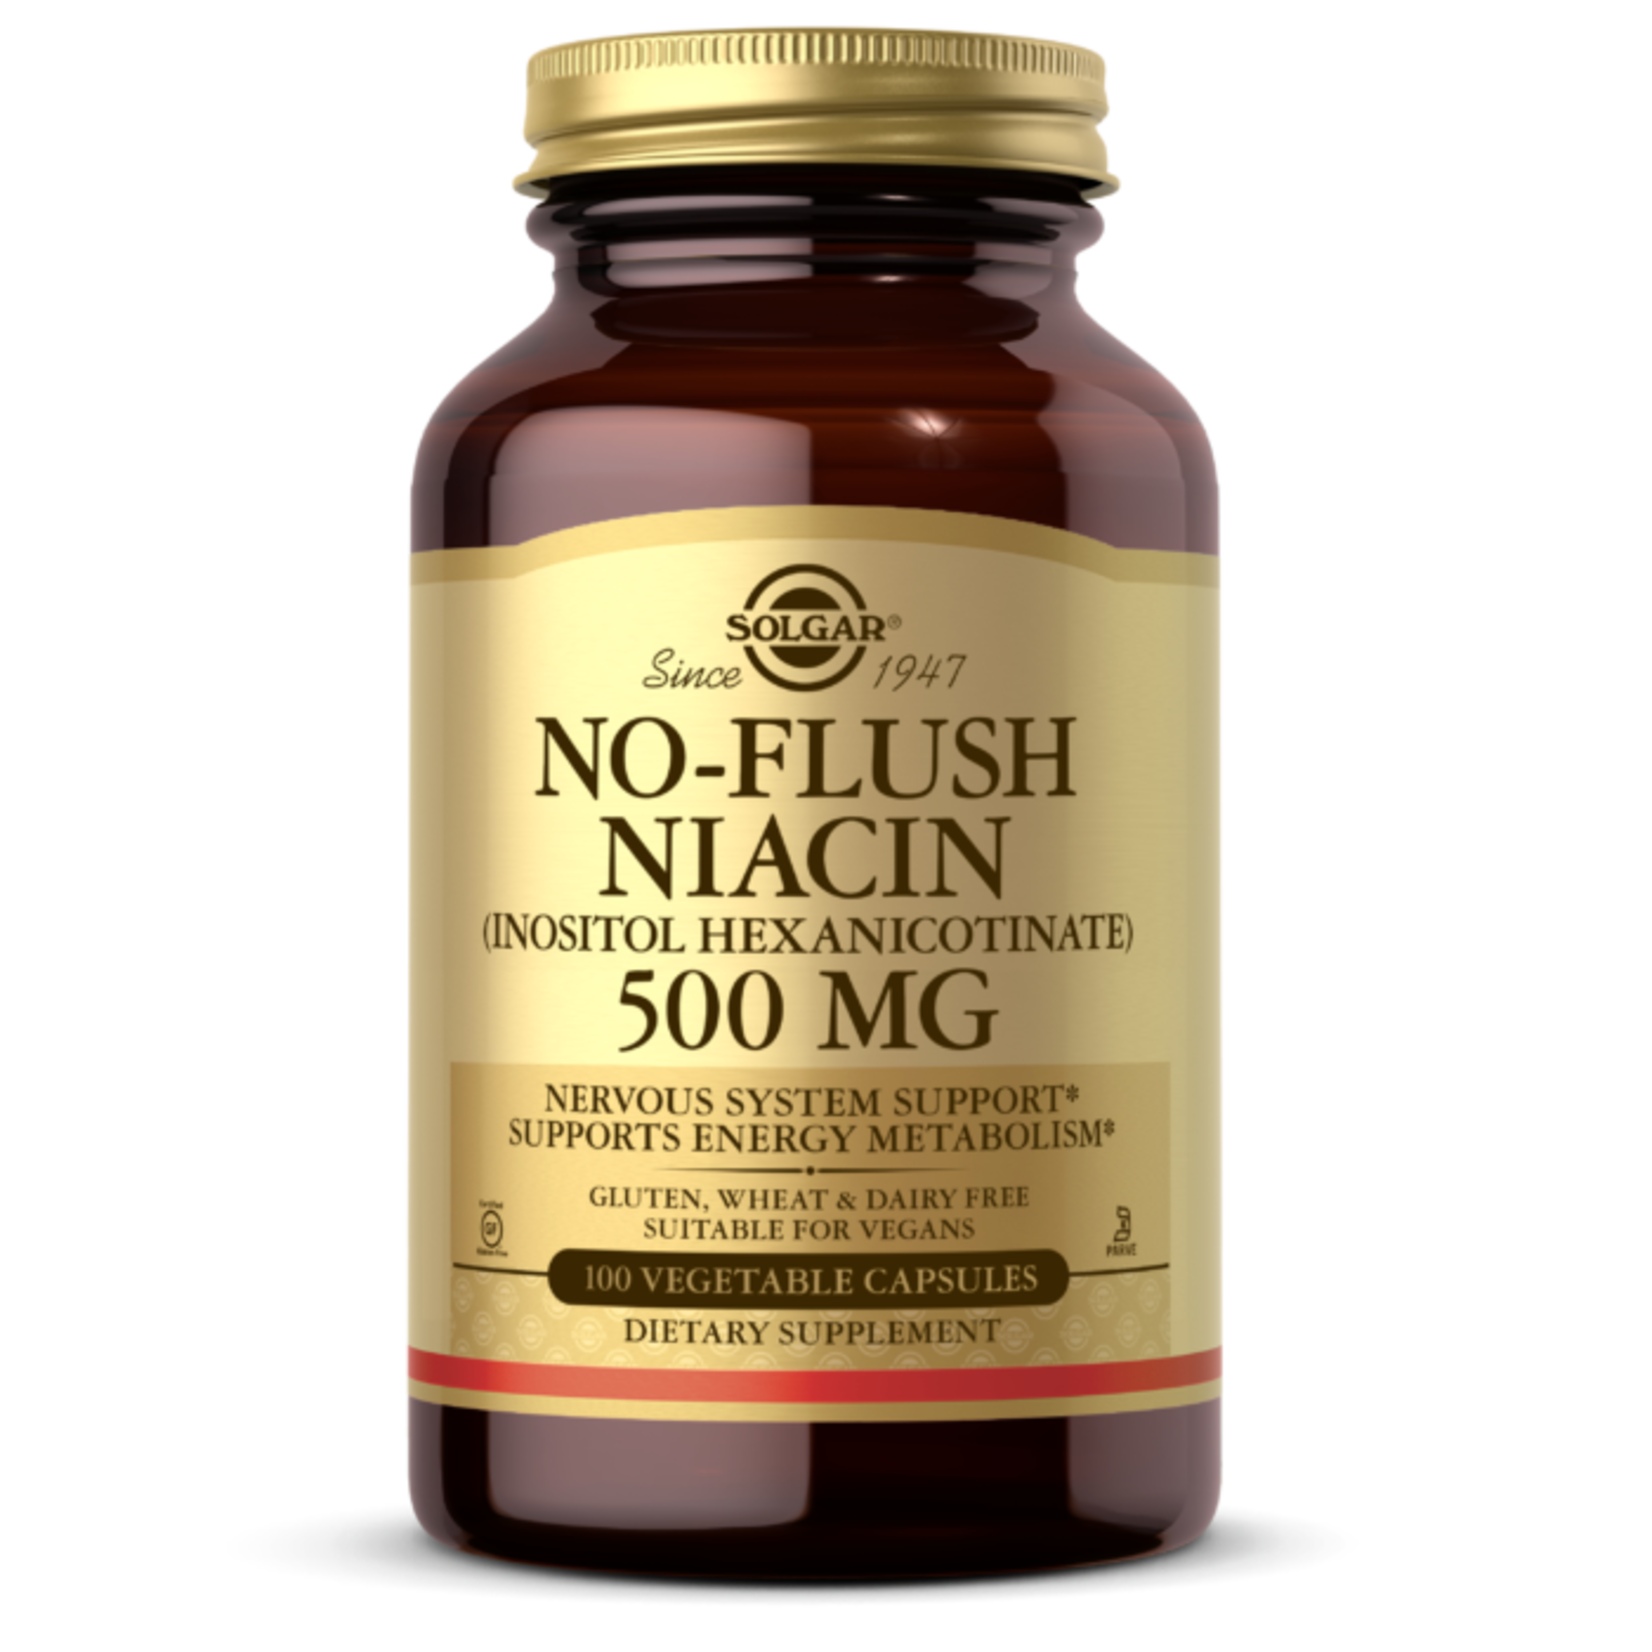 Solgar Solgar - No-Flush Niacin 500 mg - 100 Veg Capsules